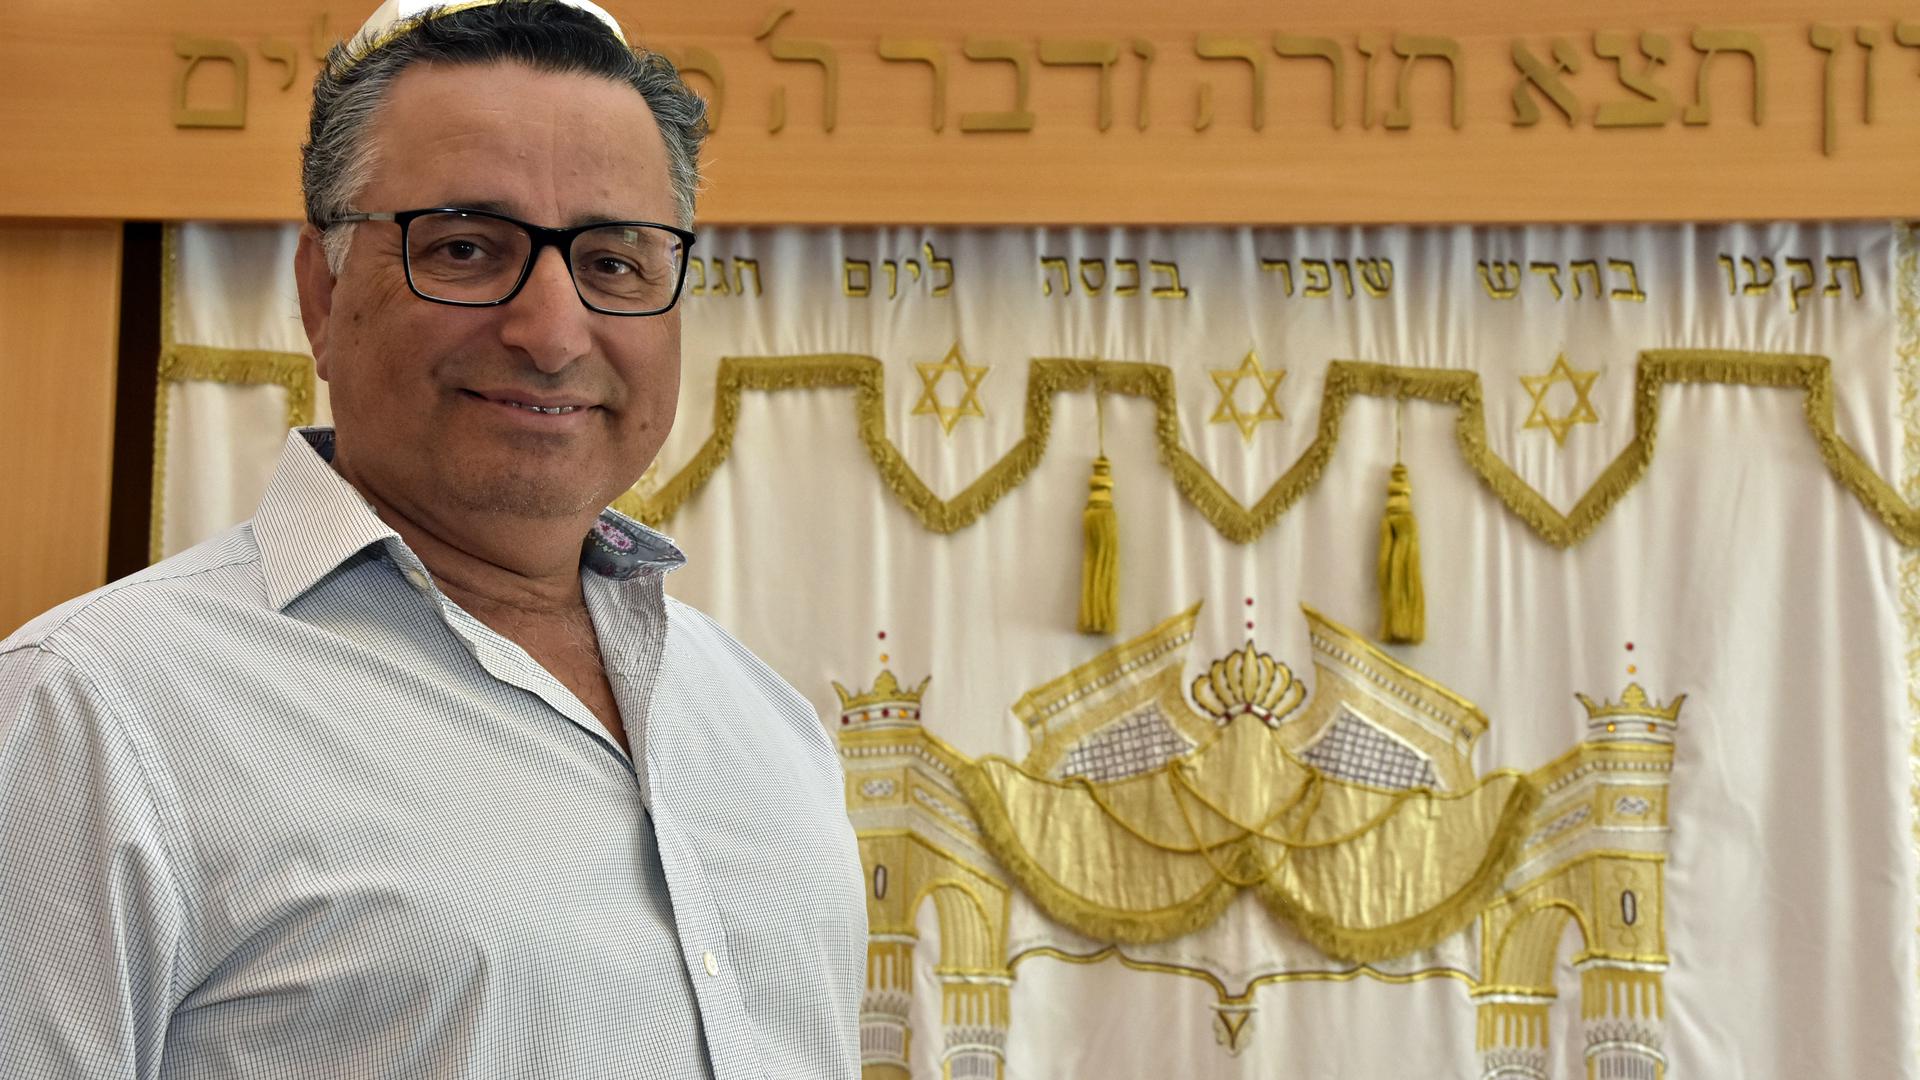 Klagte gegen Die Rechte: Rami Suliman, Vorsitzender der Jüdischen Gemeinde Pforzheim. Fotografiert in einer Synagoge.